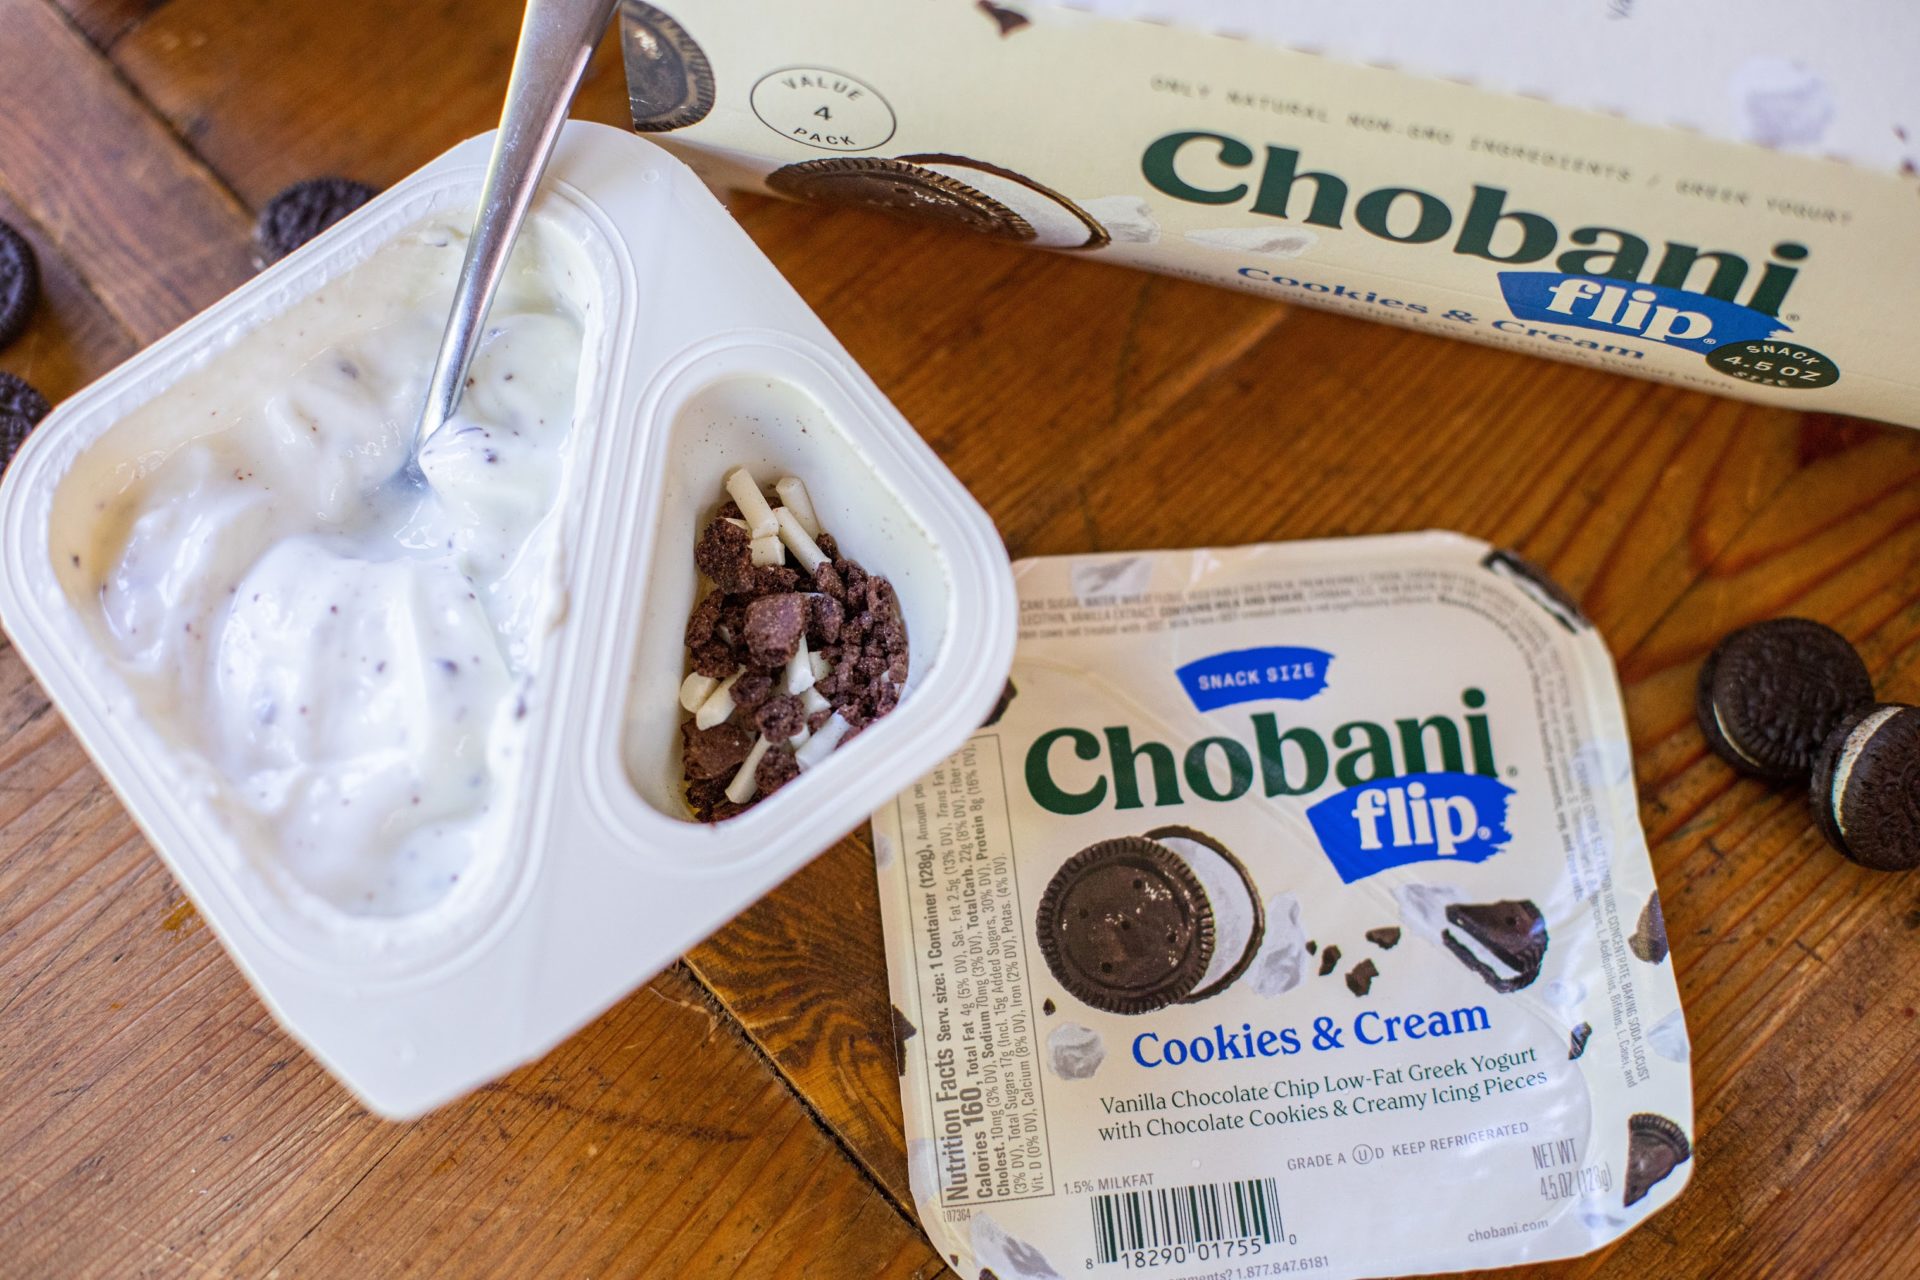 Chobani Flip Yogurt As Low As 75¢ At Kroger